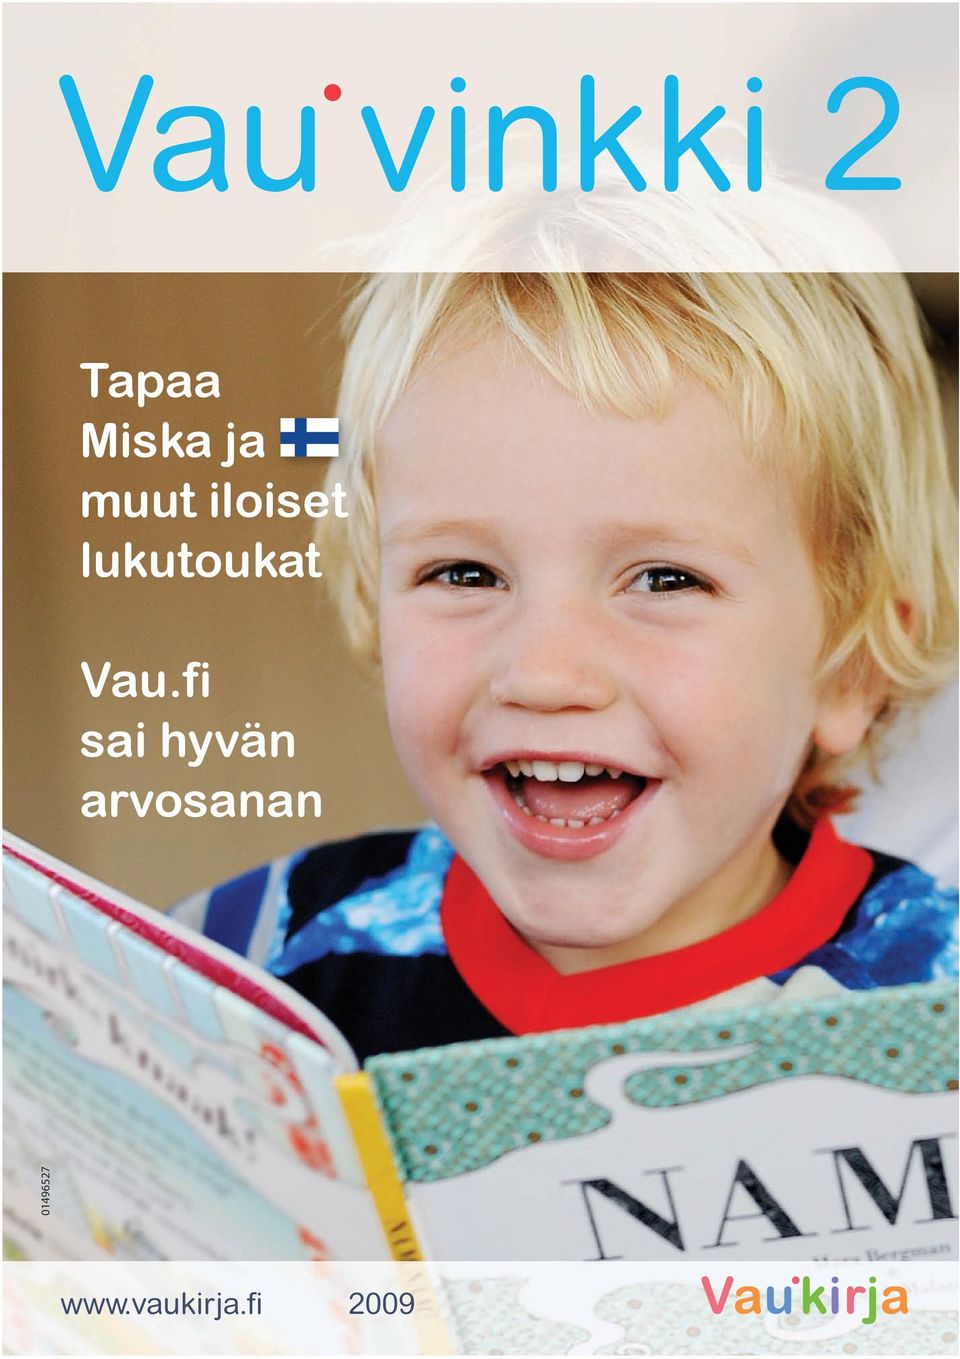 Vau.fi sai hyvän arvosanan